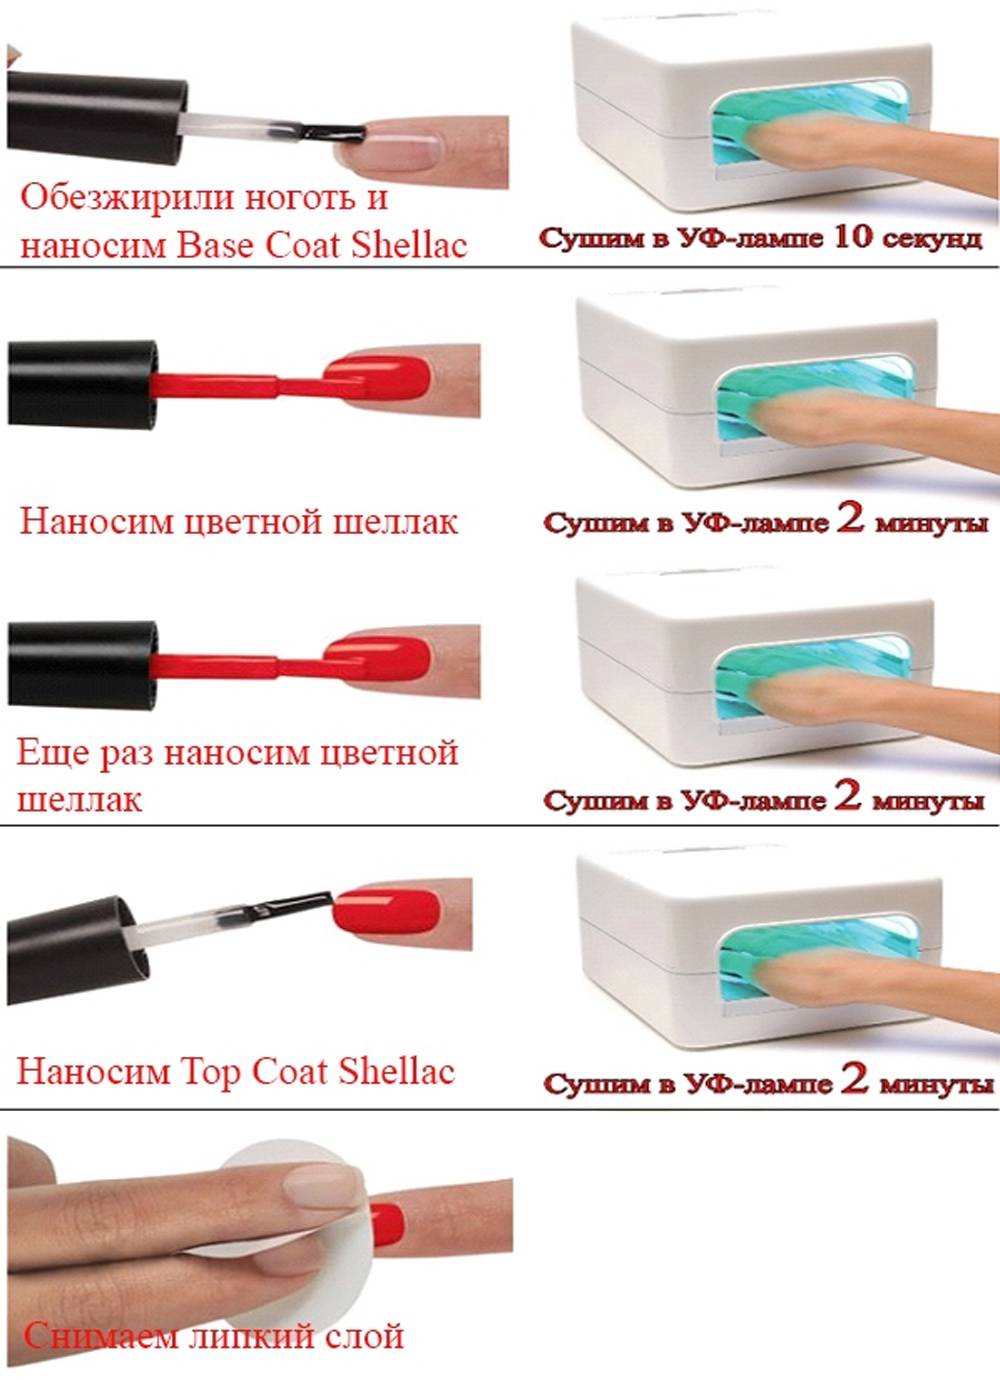 Покрытие ногтей гель лаком - преимущества, технология нанесения (фото, видео) | mastermanikura